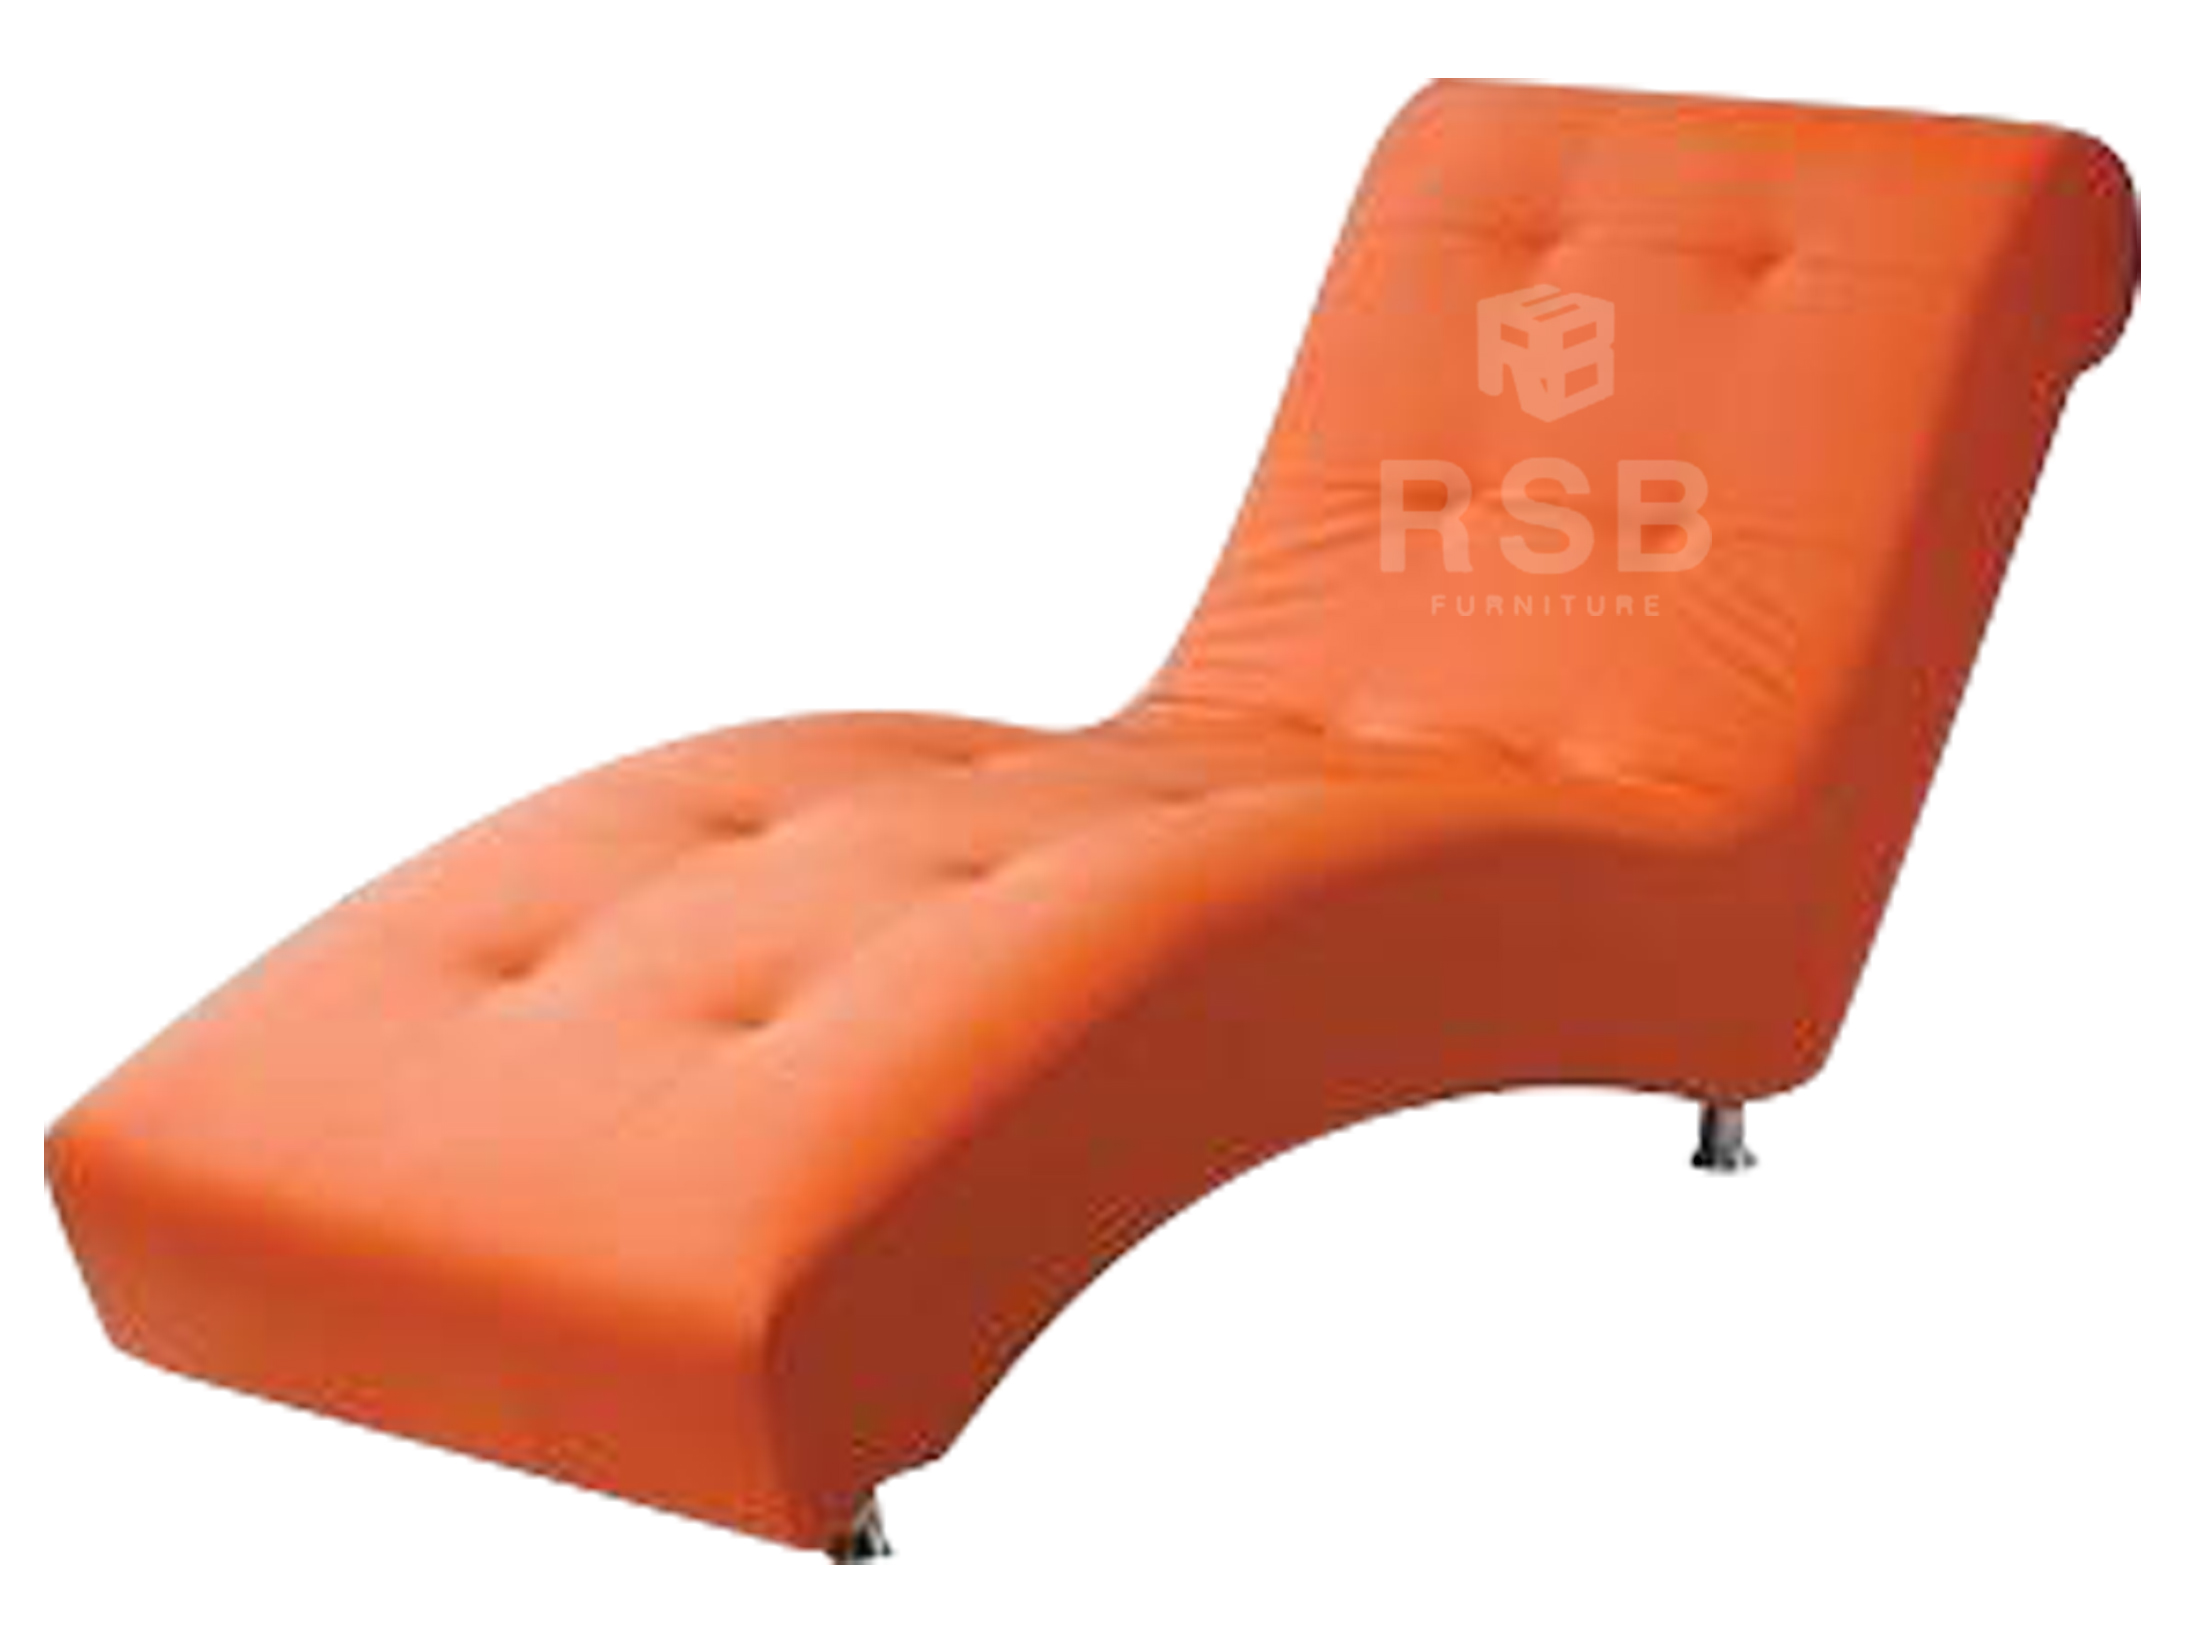 โซฟา Lounge chair งานดีไซน์ รหัส 1187